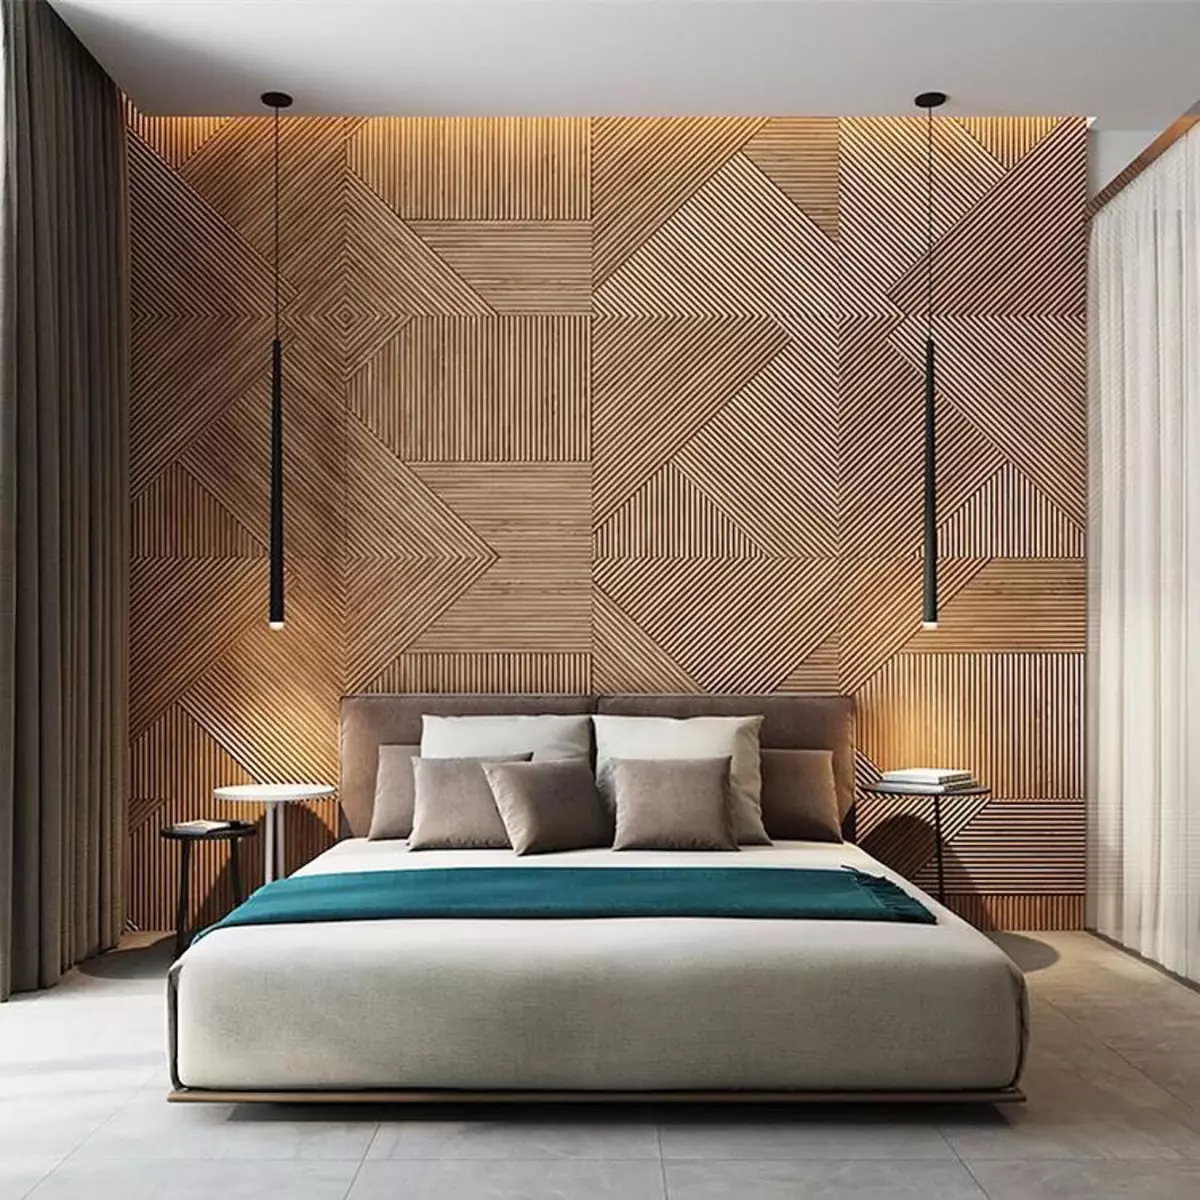 Дървени панели, изработени от естествено дърво за декорация на стената в интериорния дизайн декор